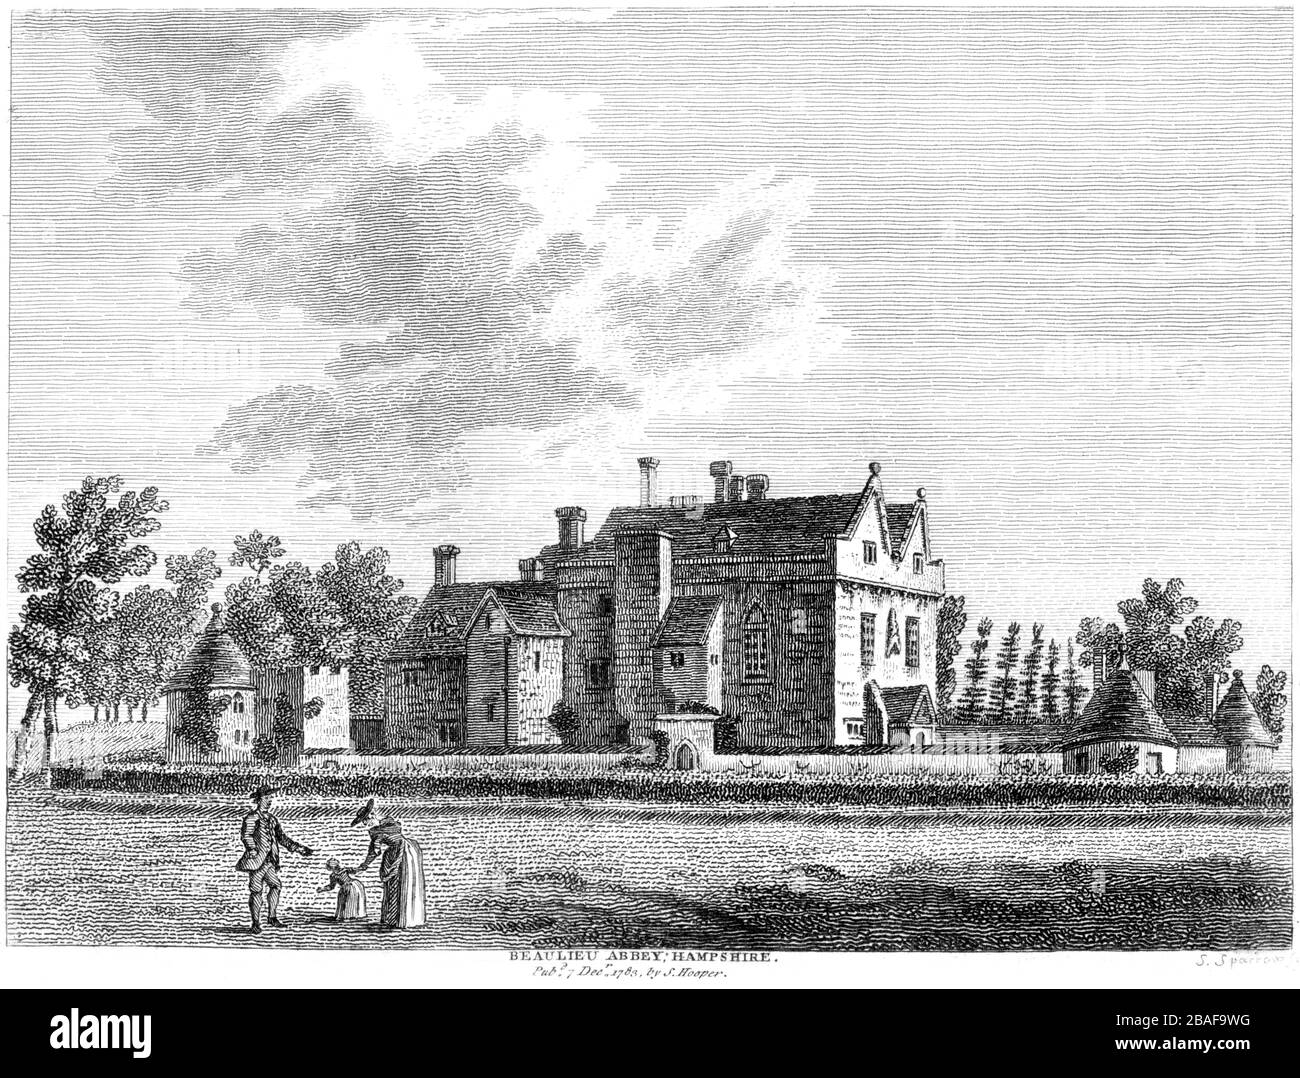 Gravur von Beaulieu Abbey Hampshire 1783 gescannt in hohen Res aus einem Buch, das um das Jahr 1786 veröffentlicht wurde. Es wird angenommen, dass dieses Bild frei von allen Urheberrechten ist. Stockfoto